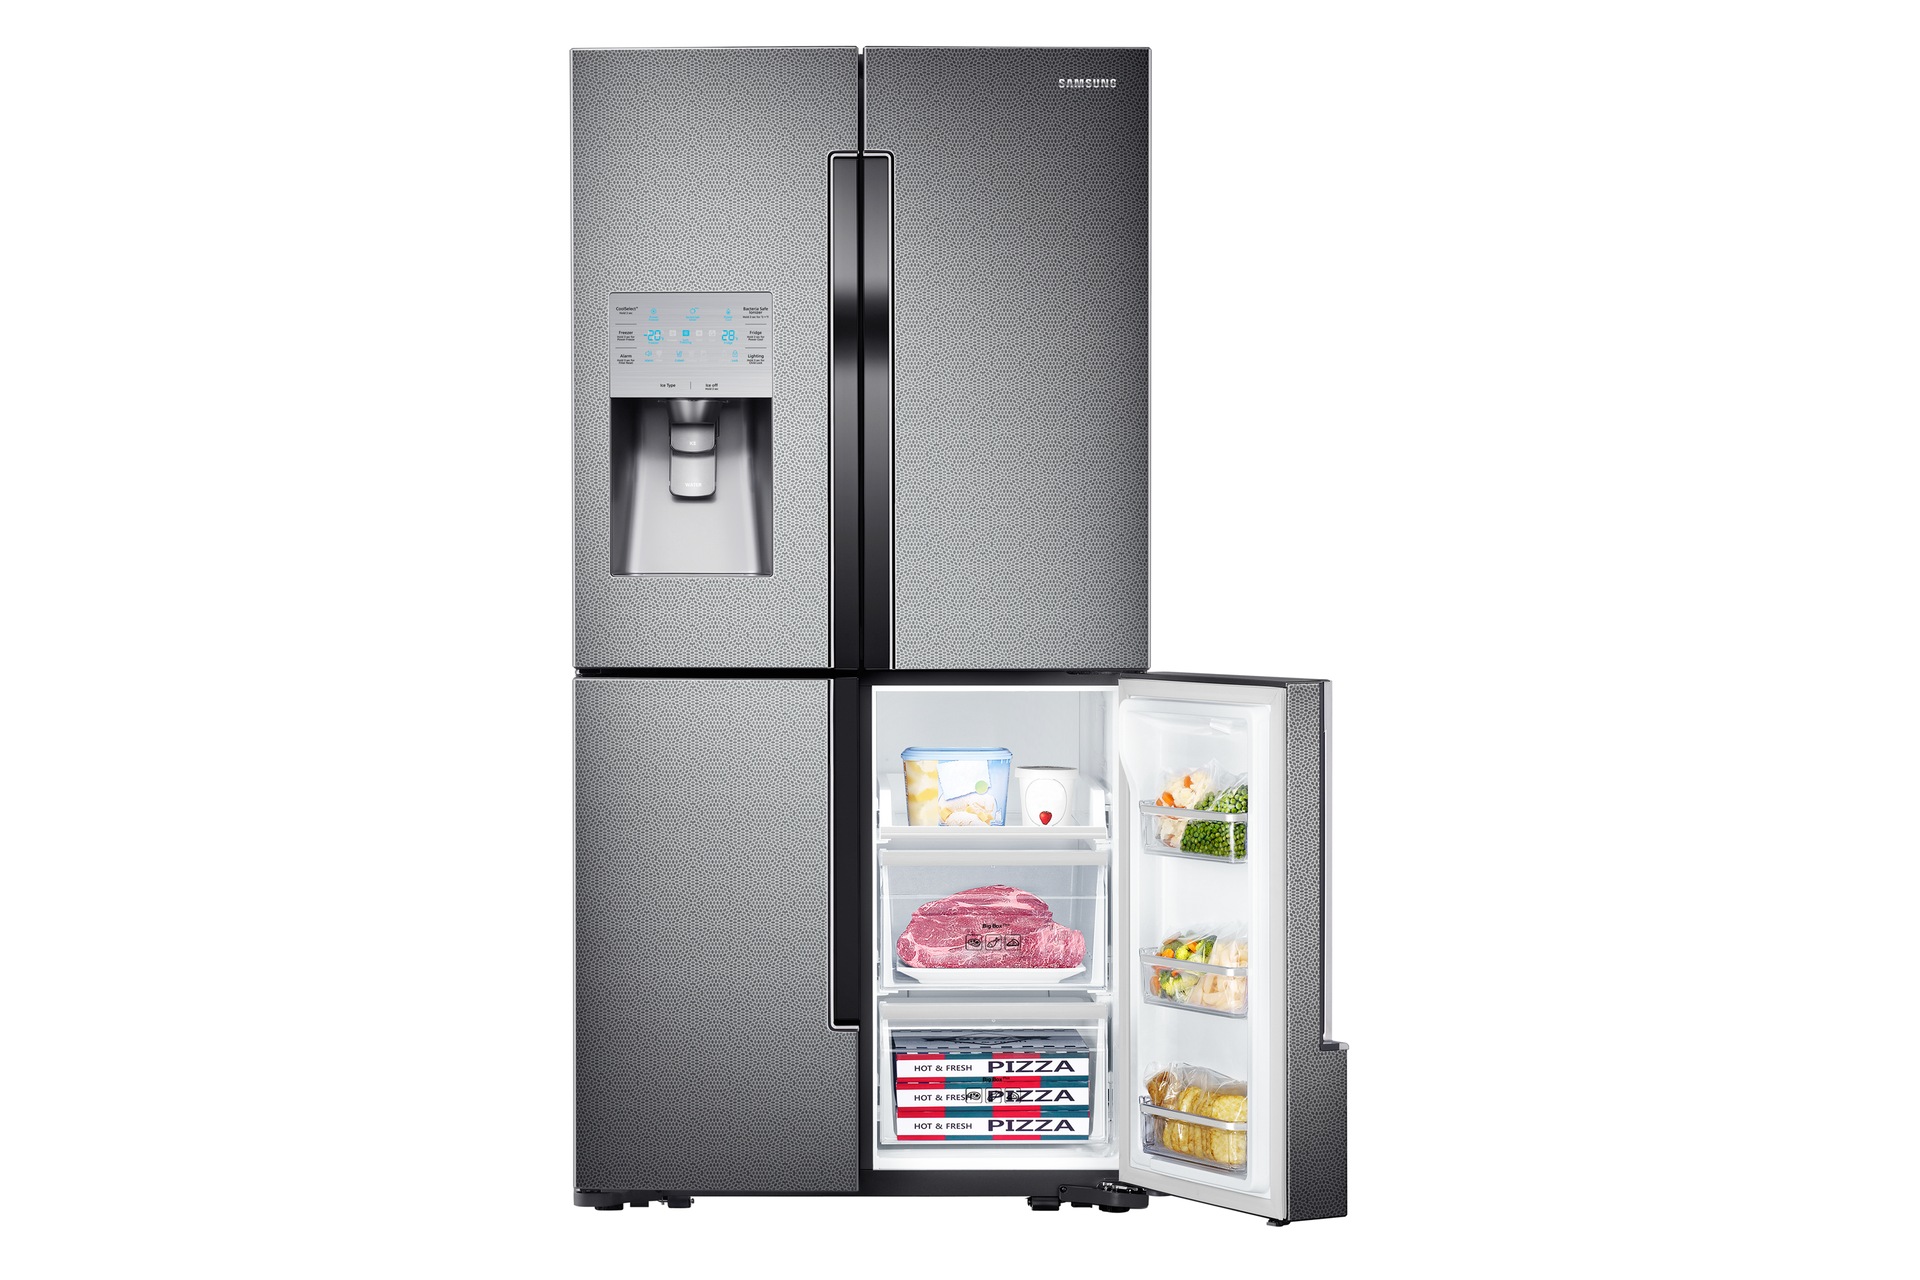 Samsung Double Door Refrigerator, Price, French Door Fridge Specs India